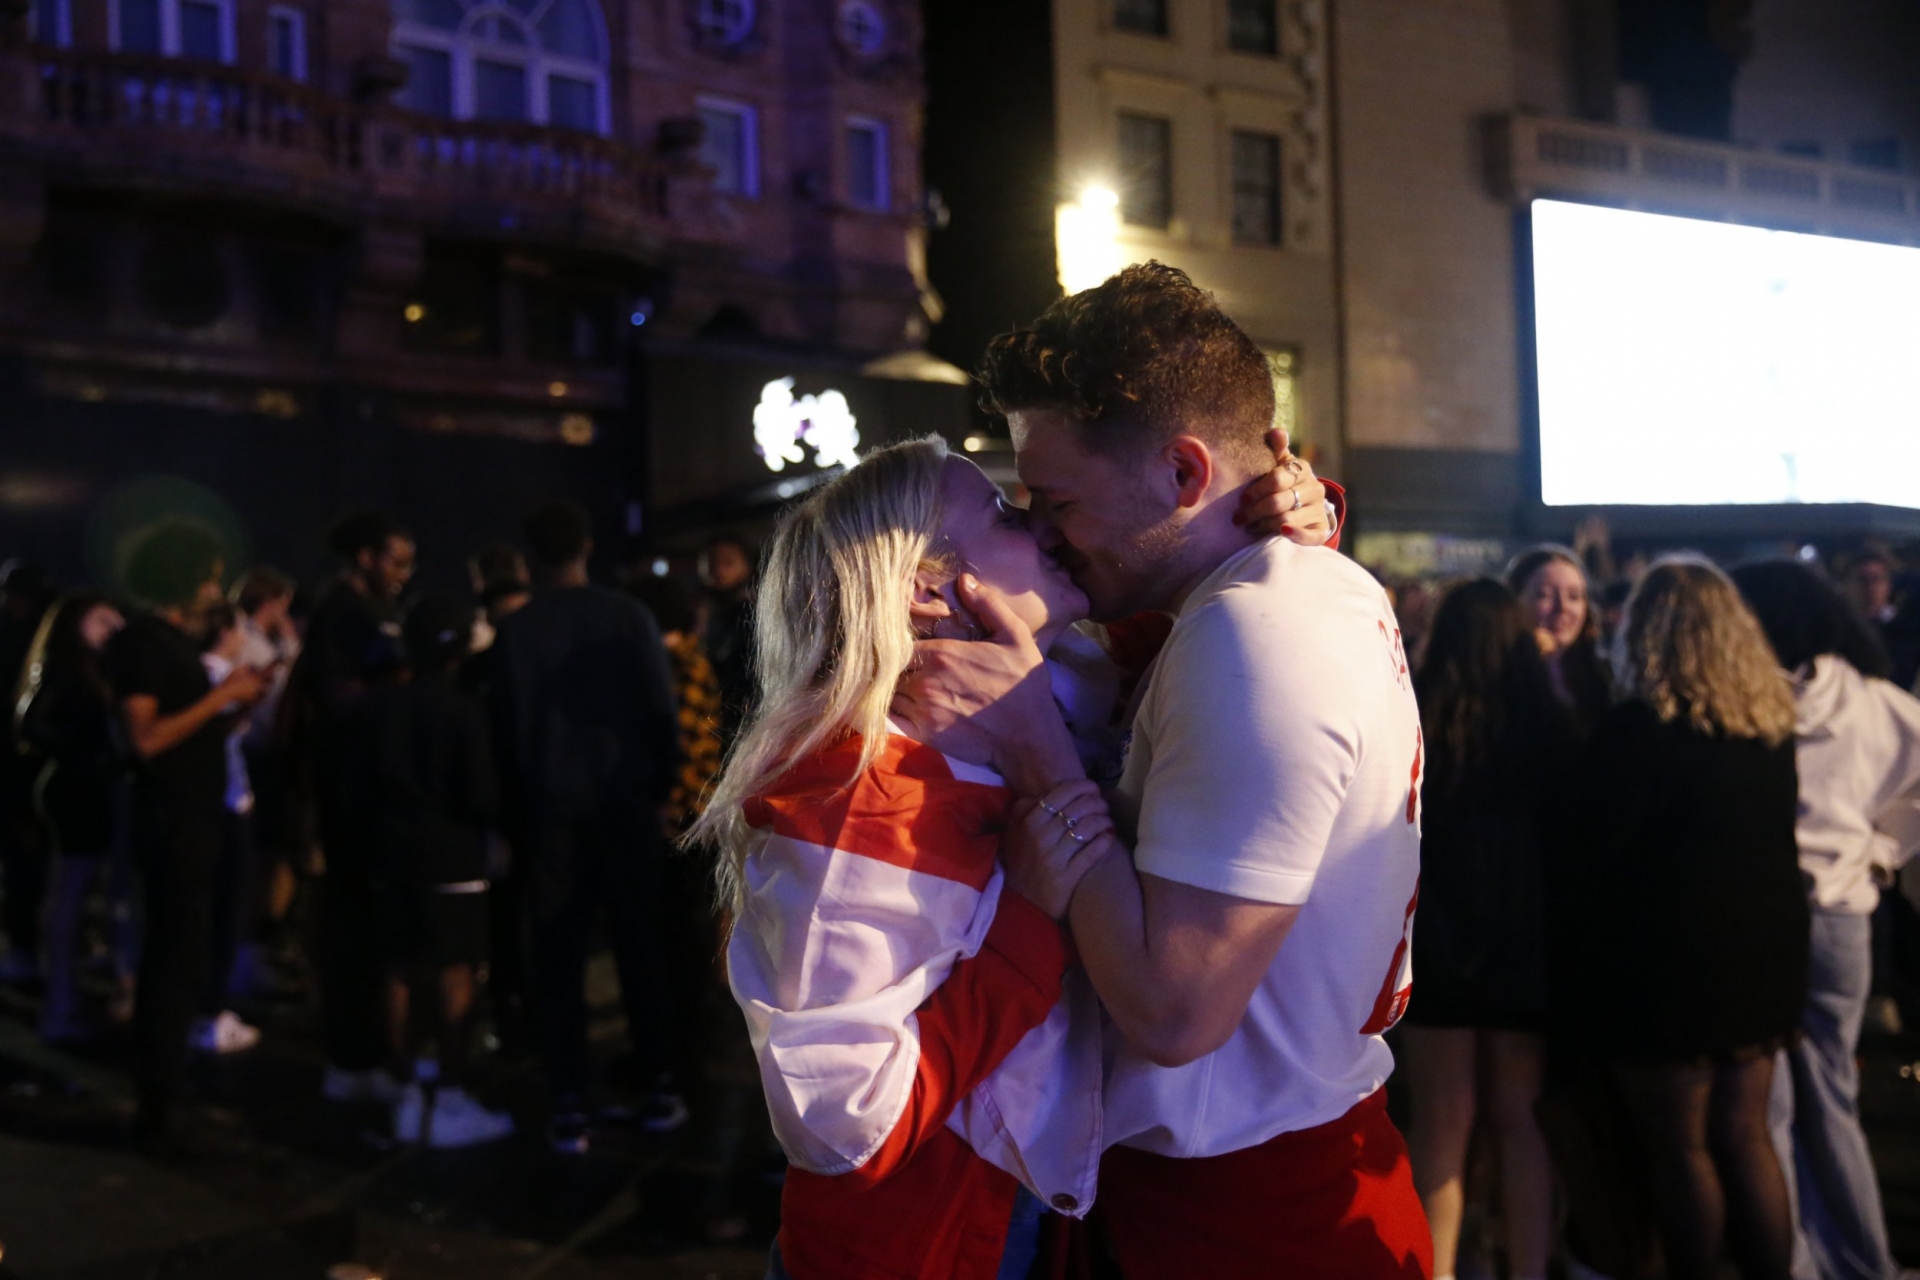 CĐV Anh cũng tặng nhau nụ hôn ngọt ngào để ăn mừng vào chung kết. Ngoài hôn, thậm chí người Anh còn kêu gọi nhau...hơn thế nữa, bởi không thể ngăn cản cảm xúc trào dâng trước chiến thắng lịch sử.